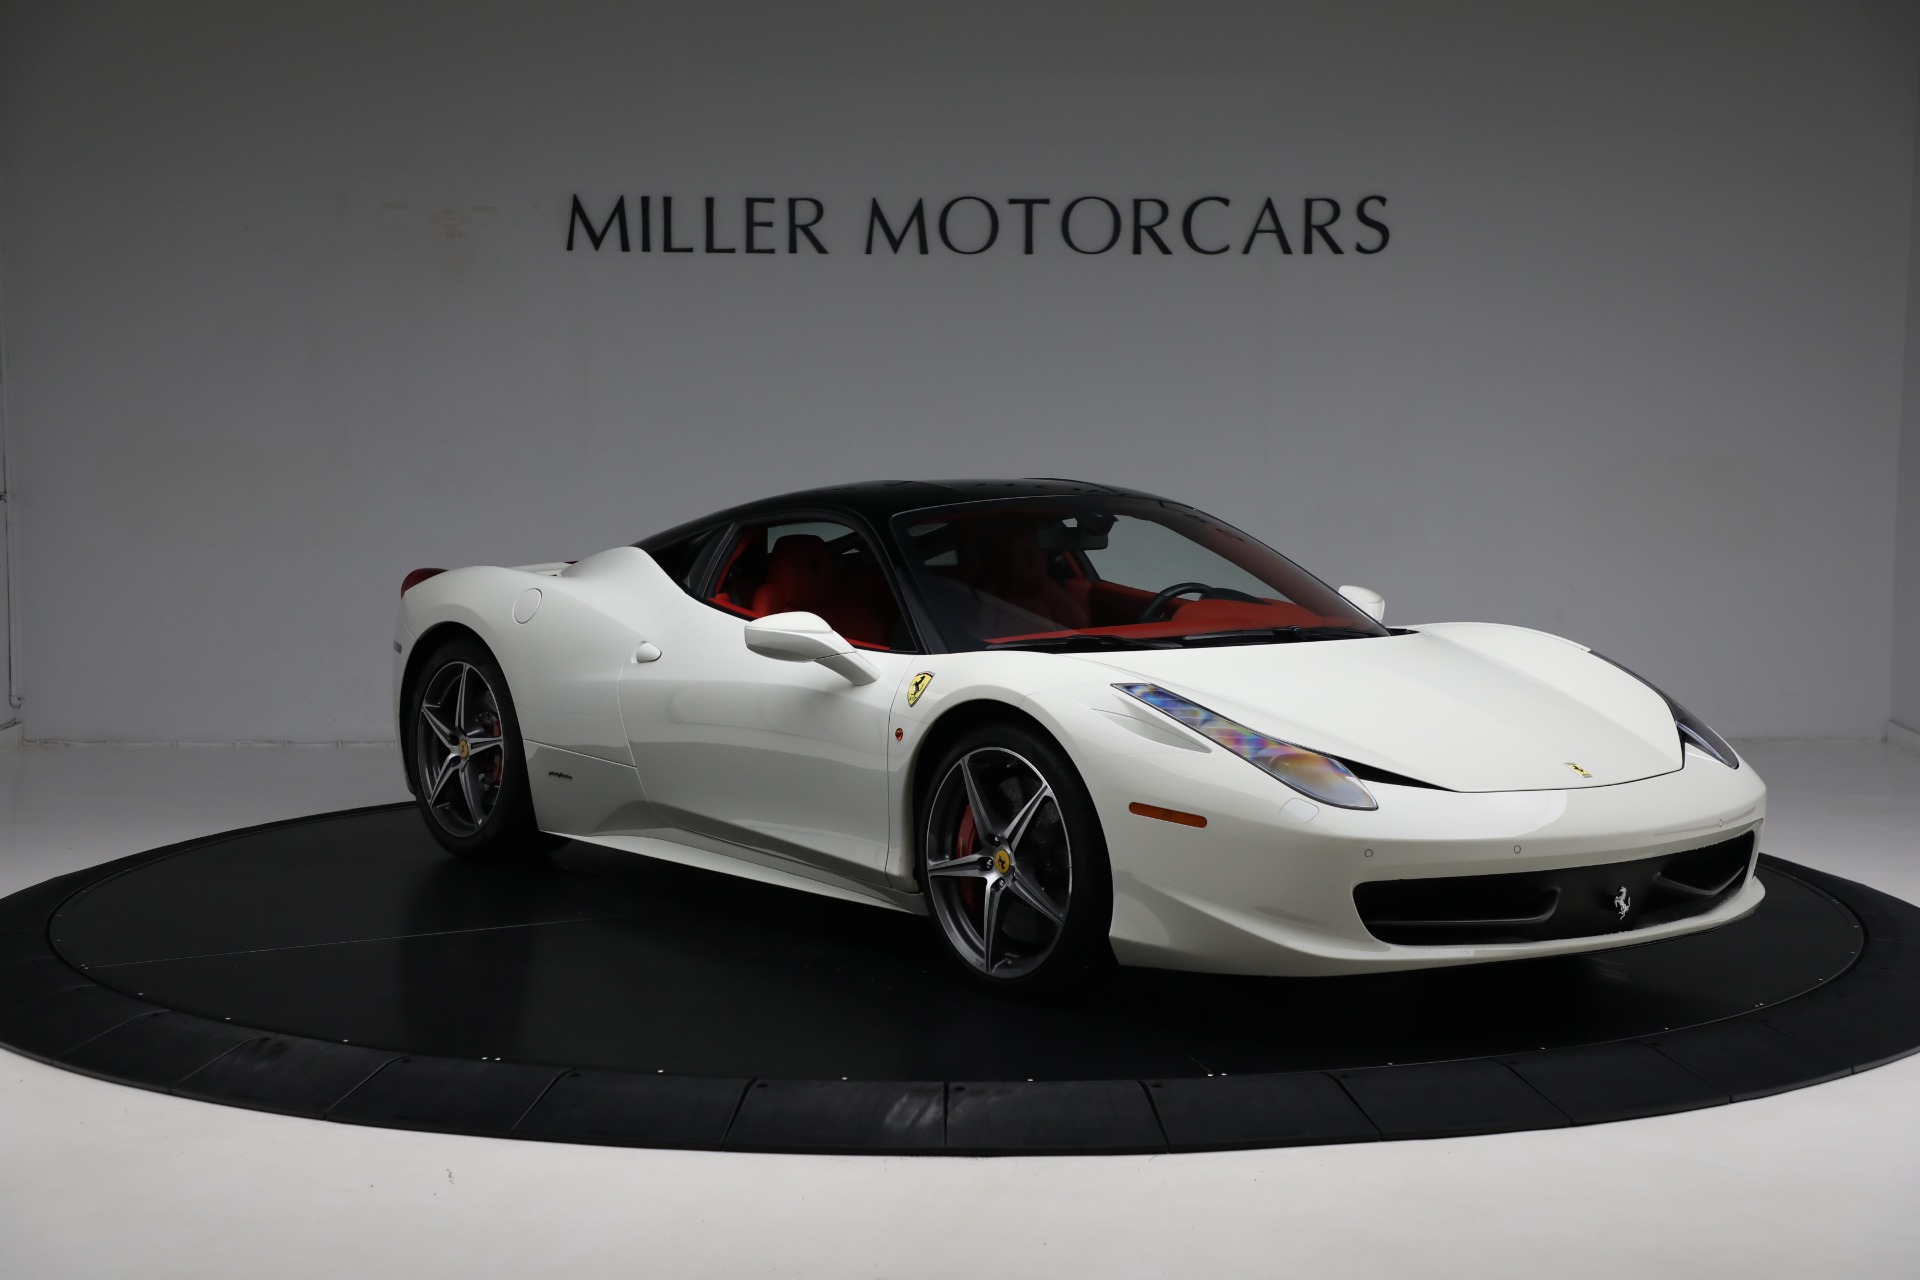 Pre-Owned 2012 Ferrari Italia For Sale () | Miller Motorcars Stock #4525